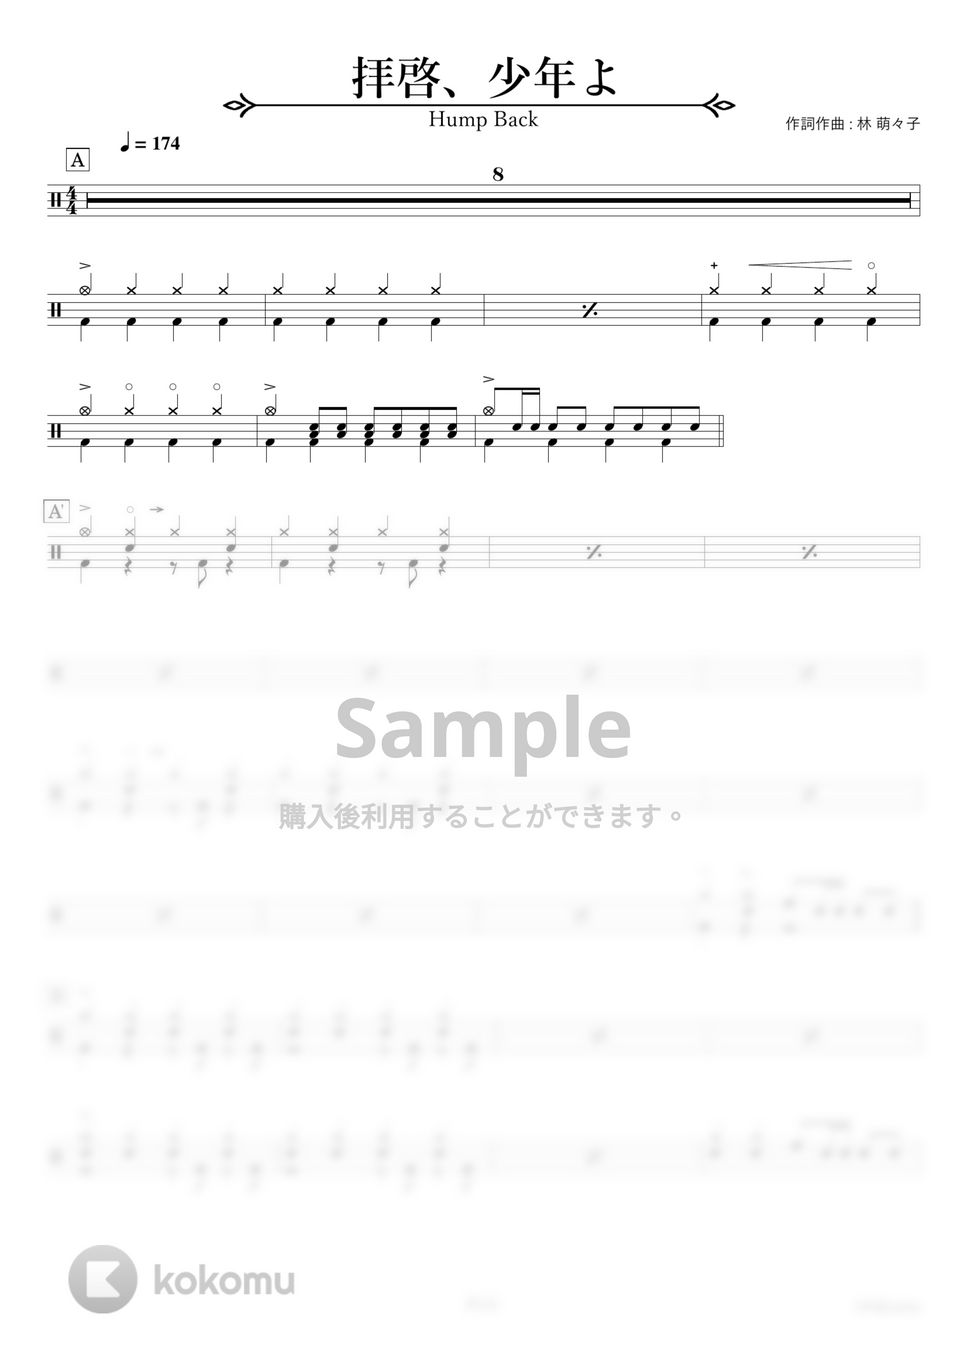 Hump Back - 拝啓、少年よ【ドラム楽譜・完コピ】 by HYdrums